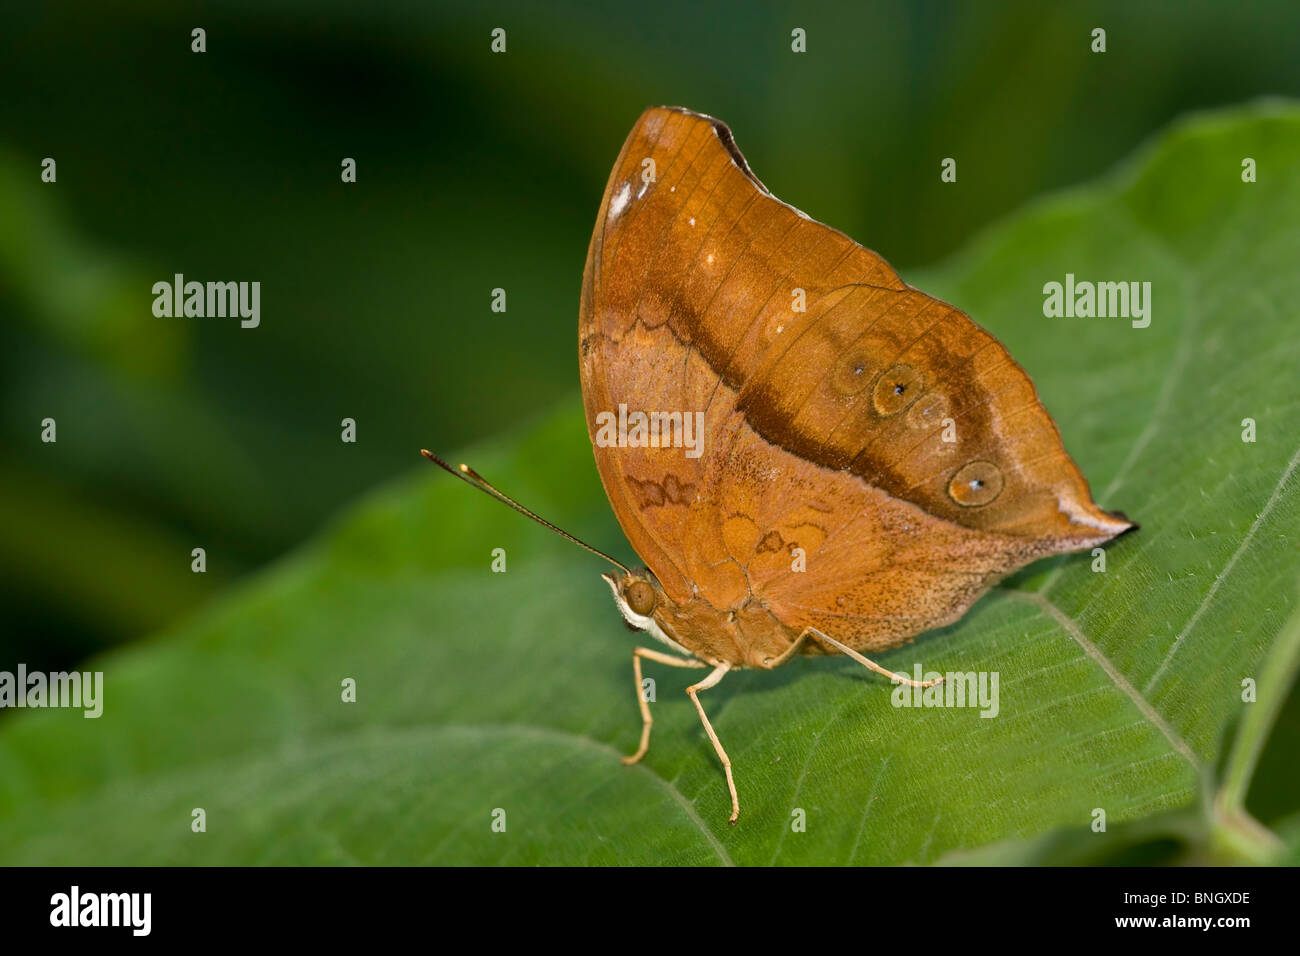 Hoja de Otoño butterfly (Doleschallia bisaltide) en una hoja Foto de stock